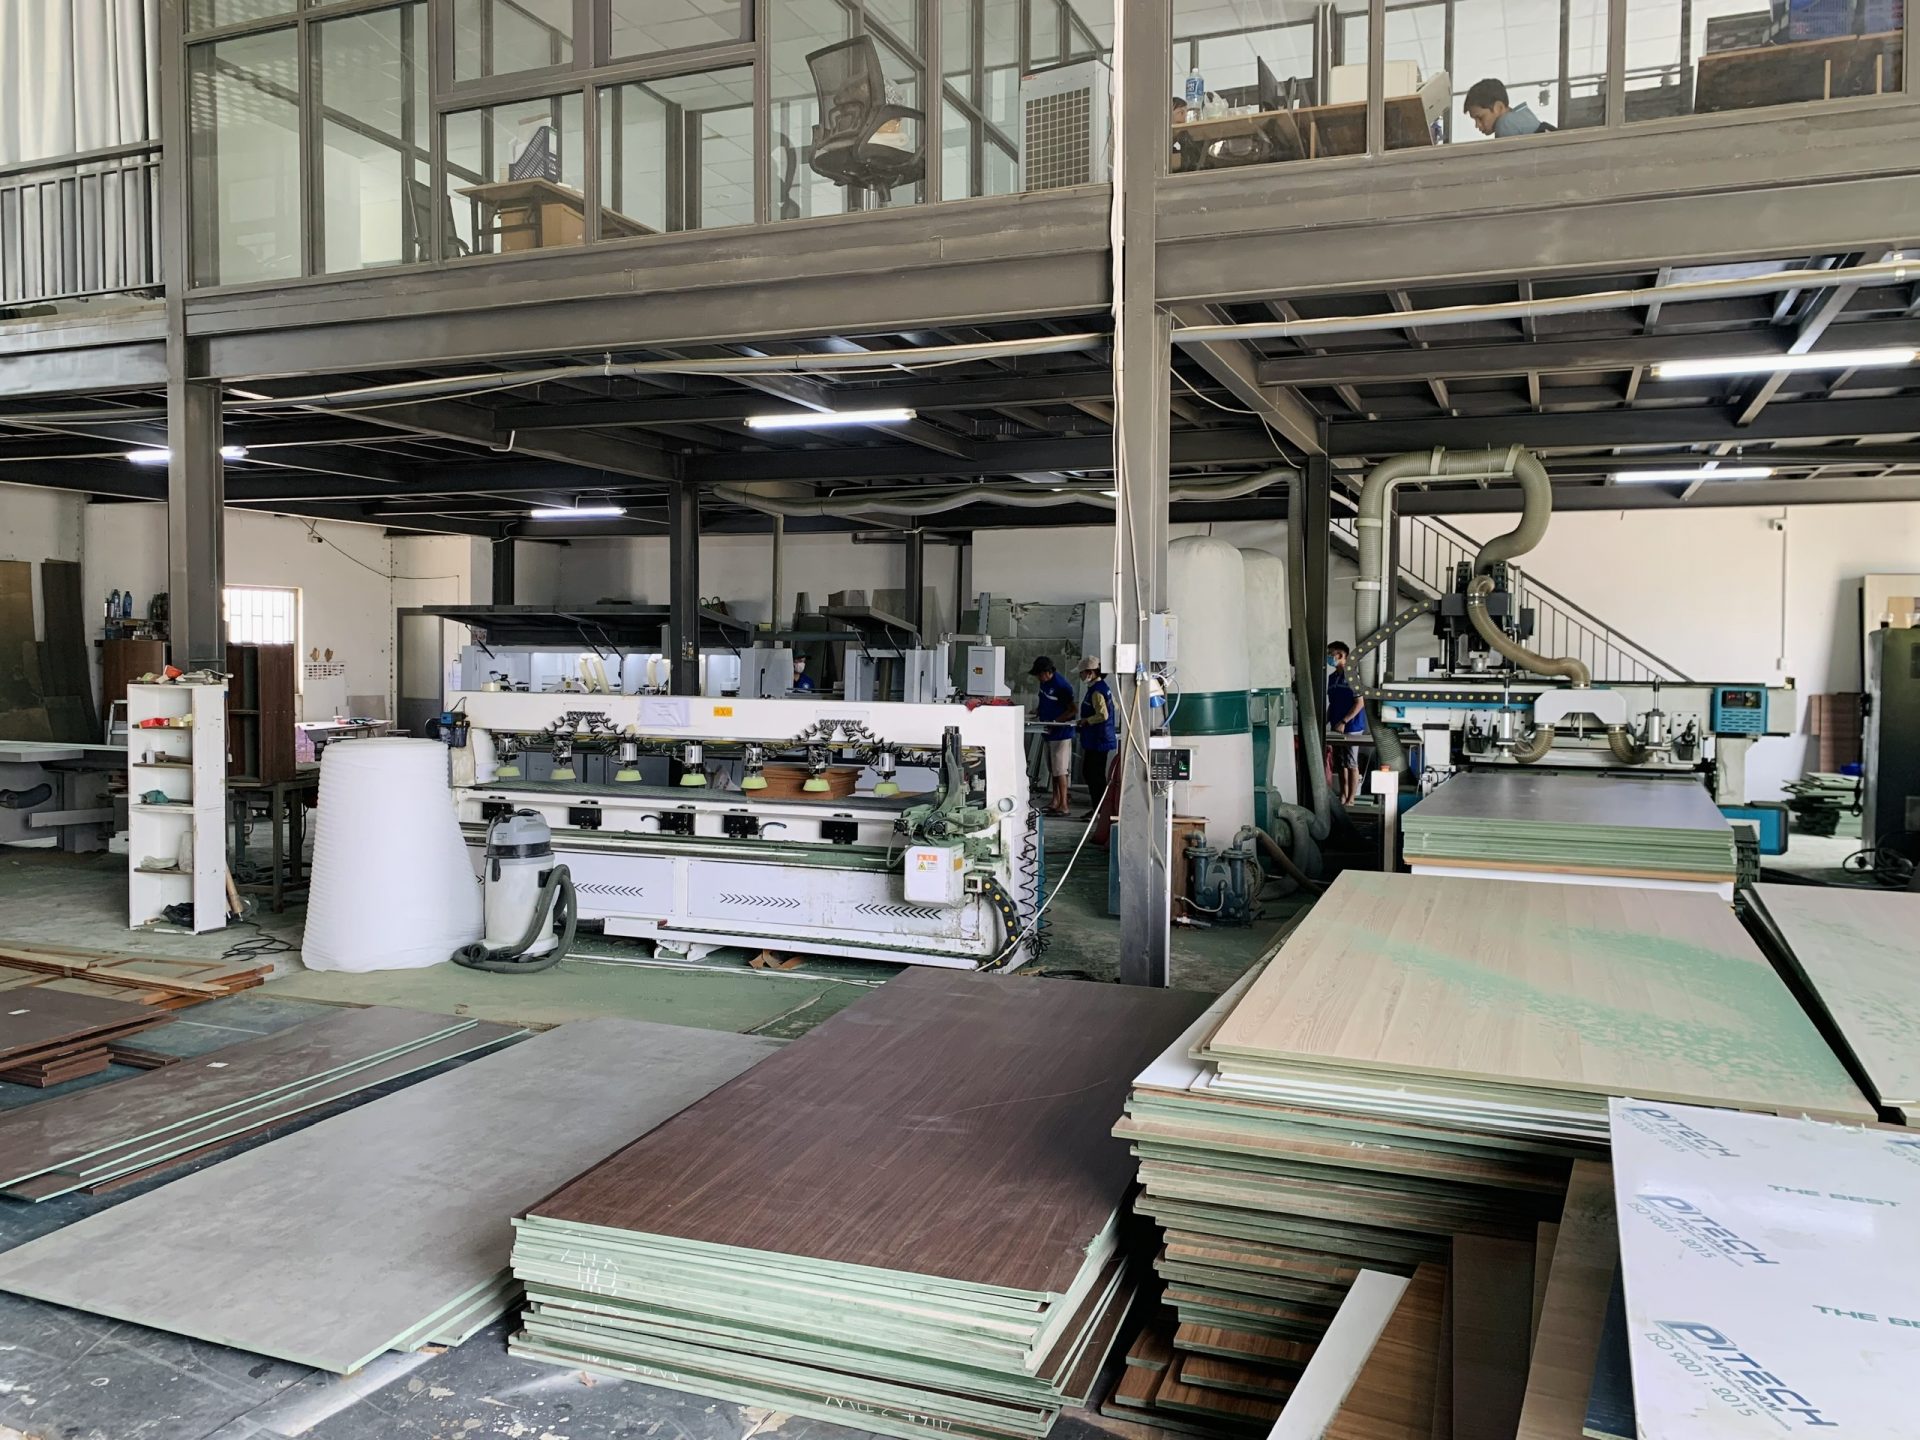 Xưởng sản xuất nội thất Nhất Tín được trang bị máy móc hiện đại và đội ngũ thợ lành nghề